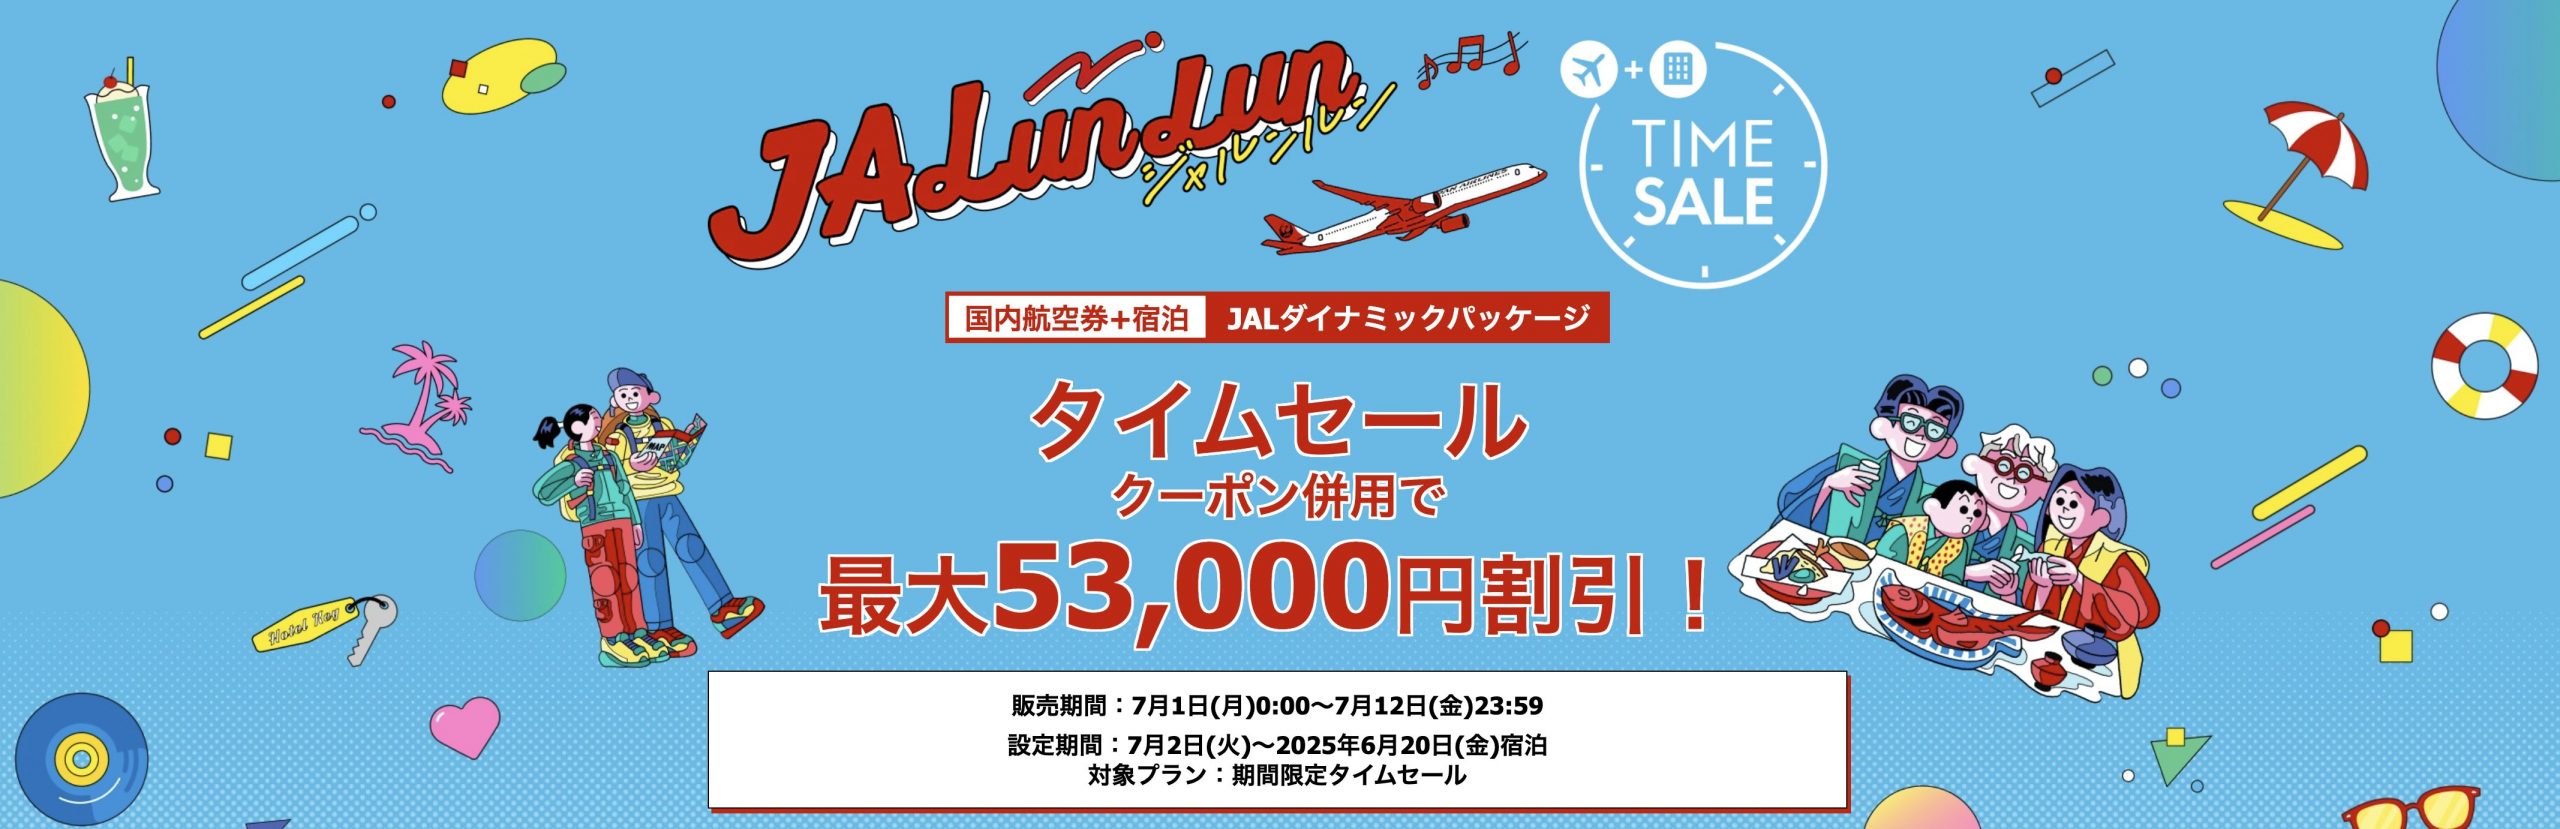 国内線航空券JAL・ ANA・ LCC 「セール・クーポン」まとめ お得な情報を紹介